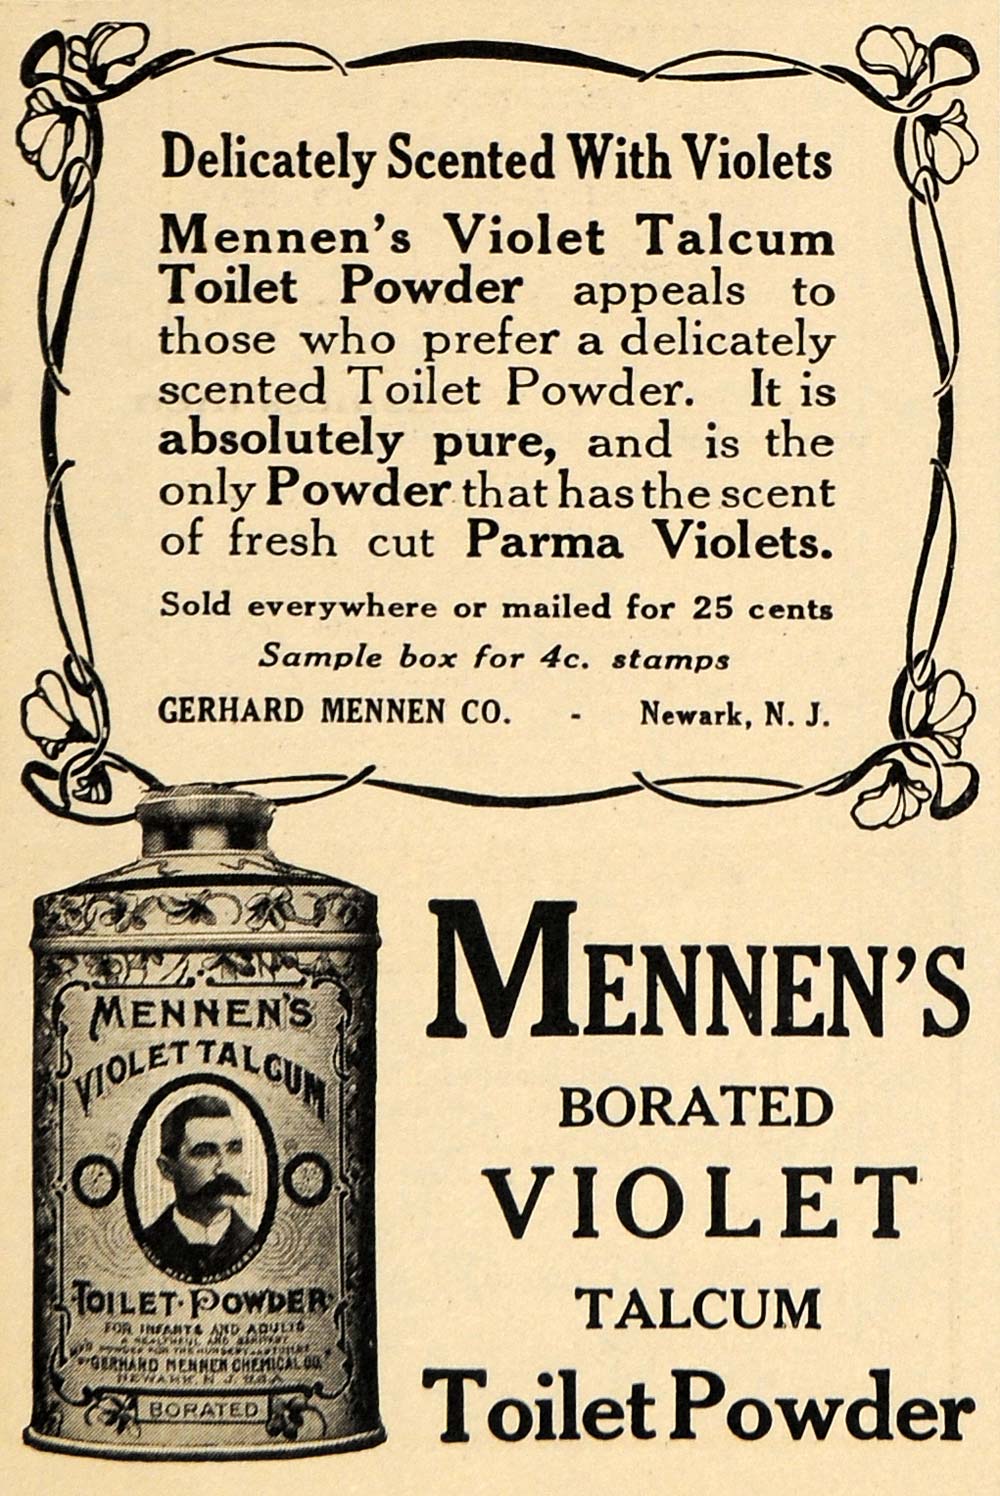 1912 Ad Mennens Borated Violet Talcum Toilet Powder - ORIGINAL ADVERTISING EM1